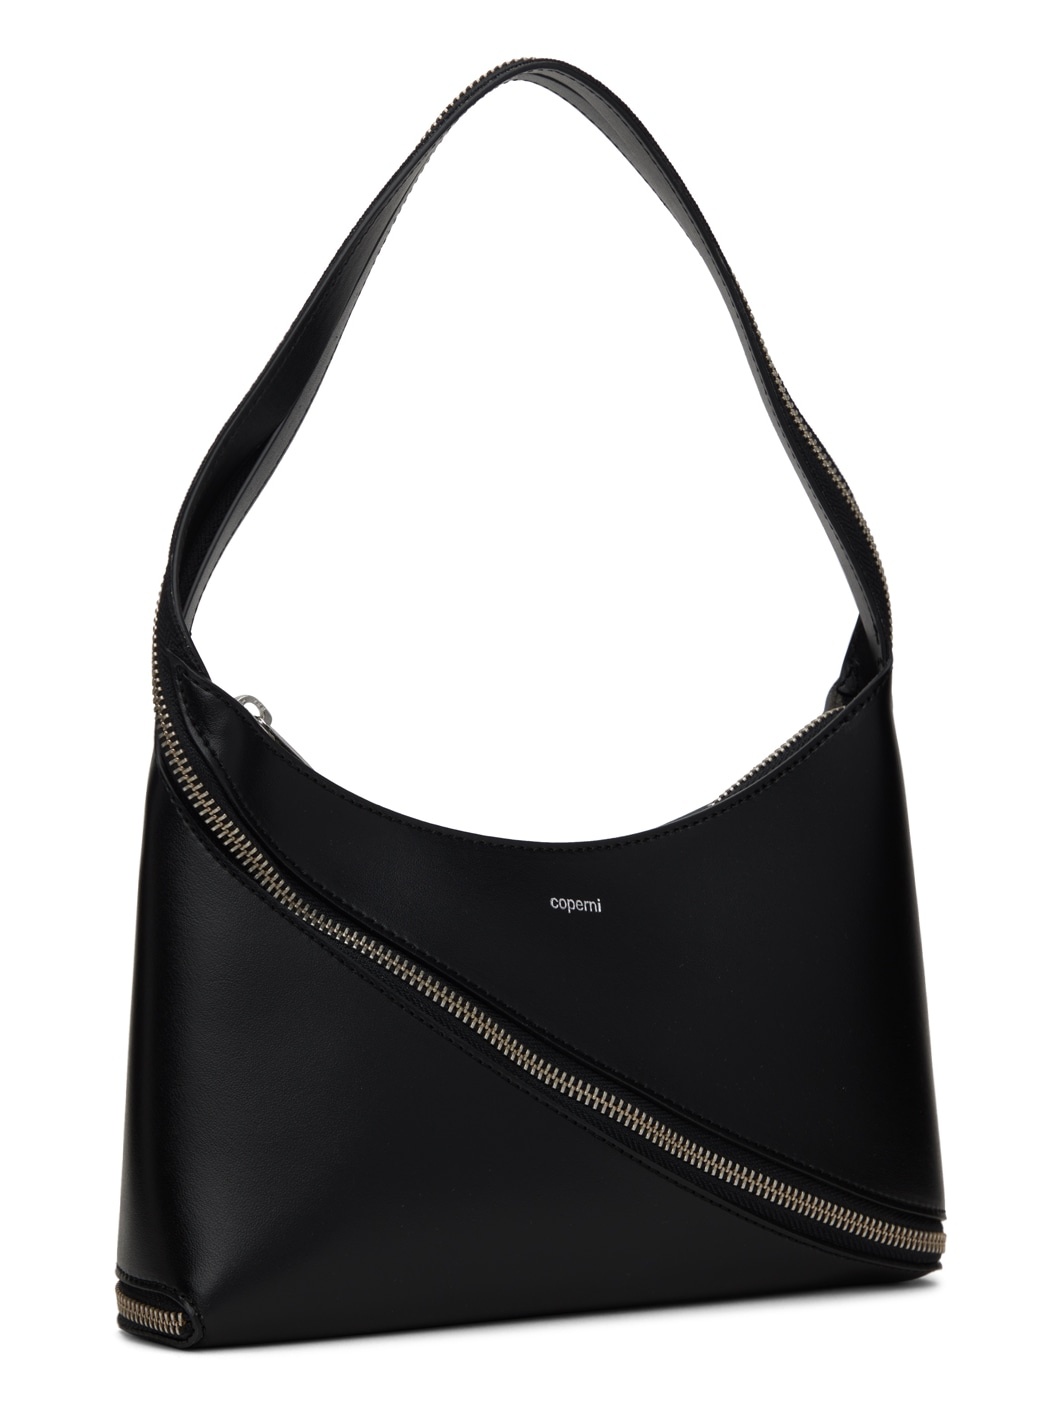 Coperni Zip Baguette Bag in Black